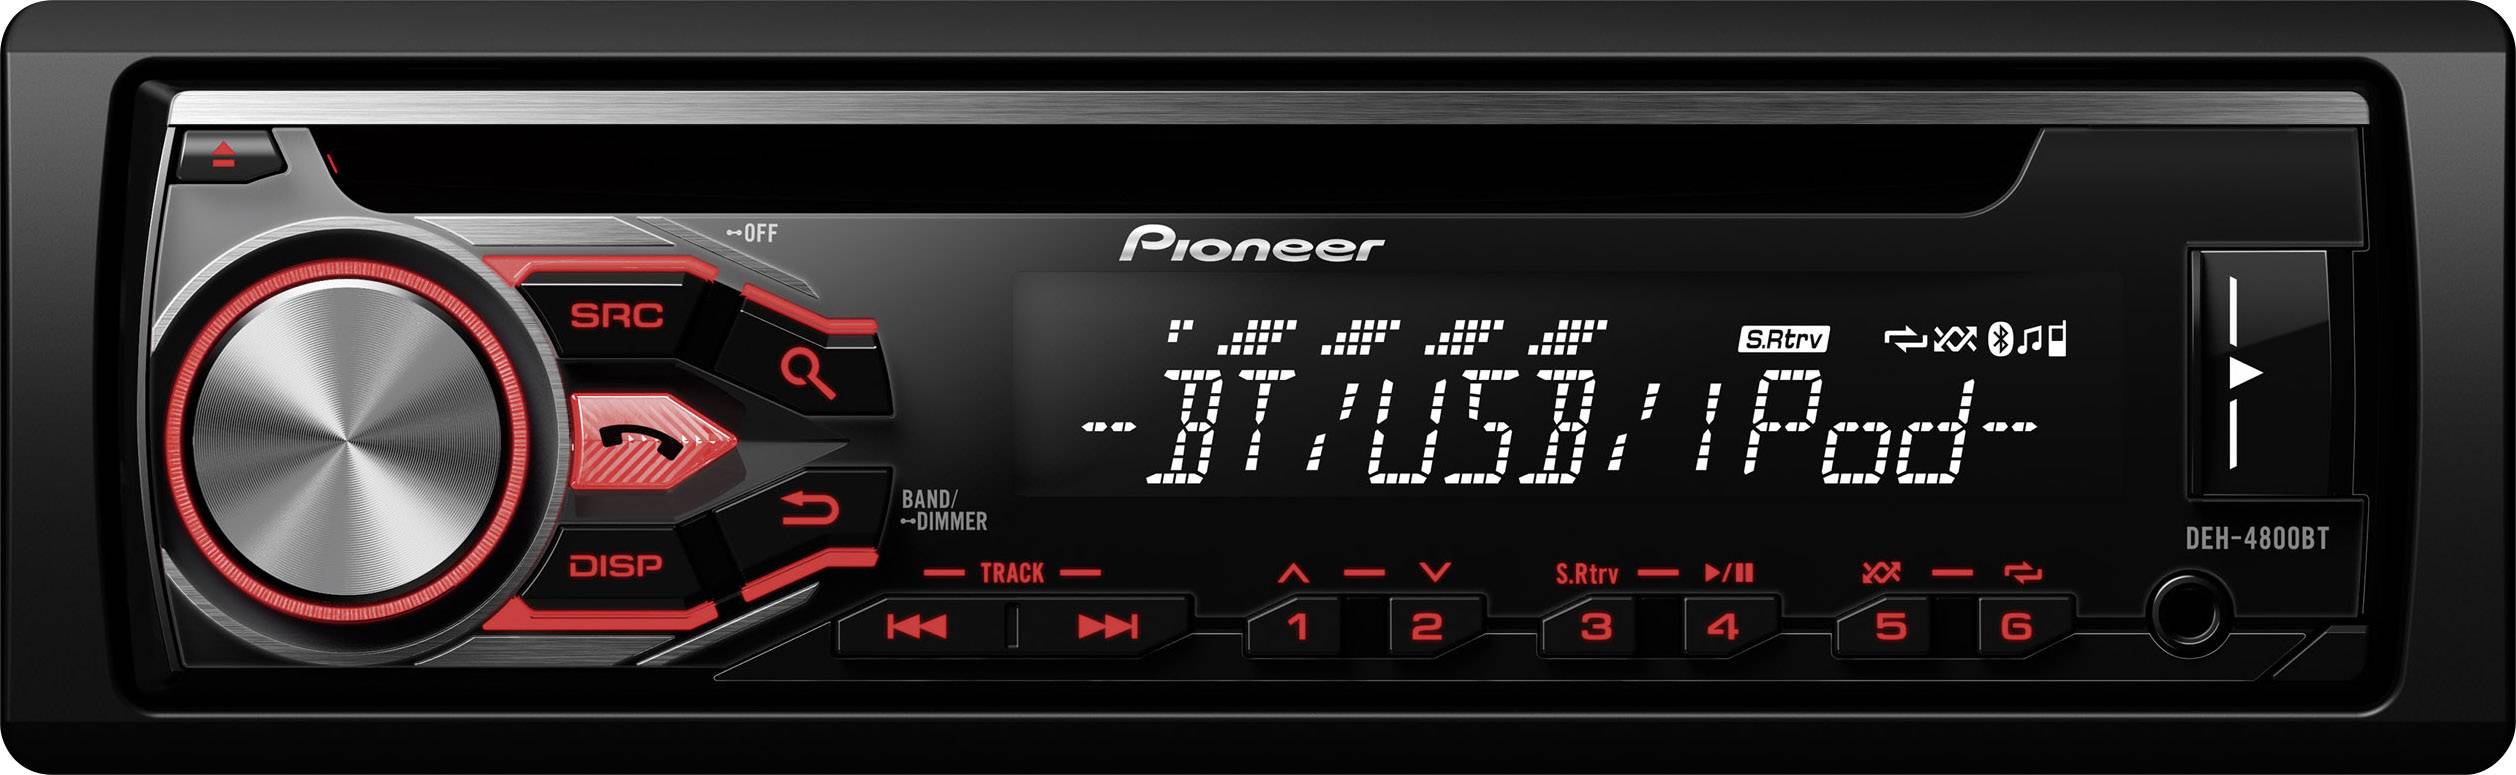 redden gemeenschap Afkorten Pioneer DEH-4800BT Autoradio enkel DIN Bluetooth handsfree | Conrad.nl